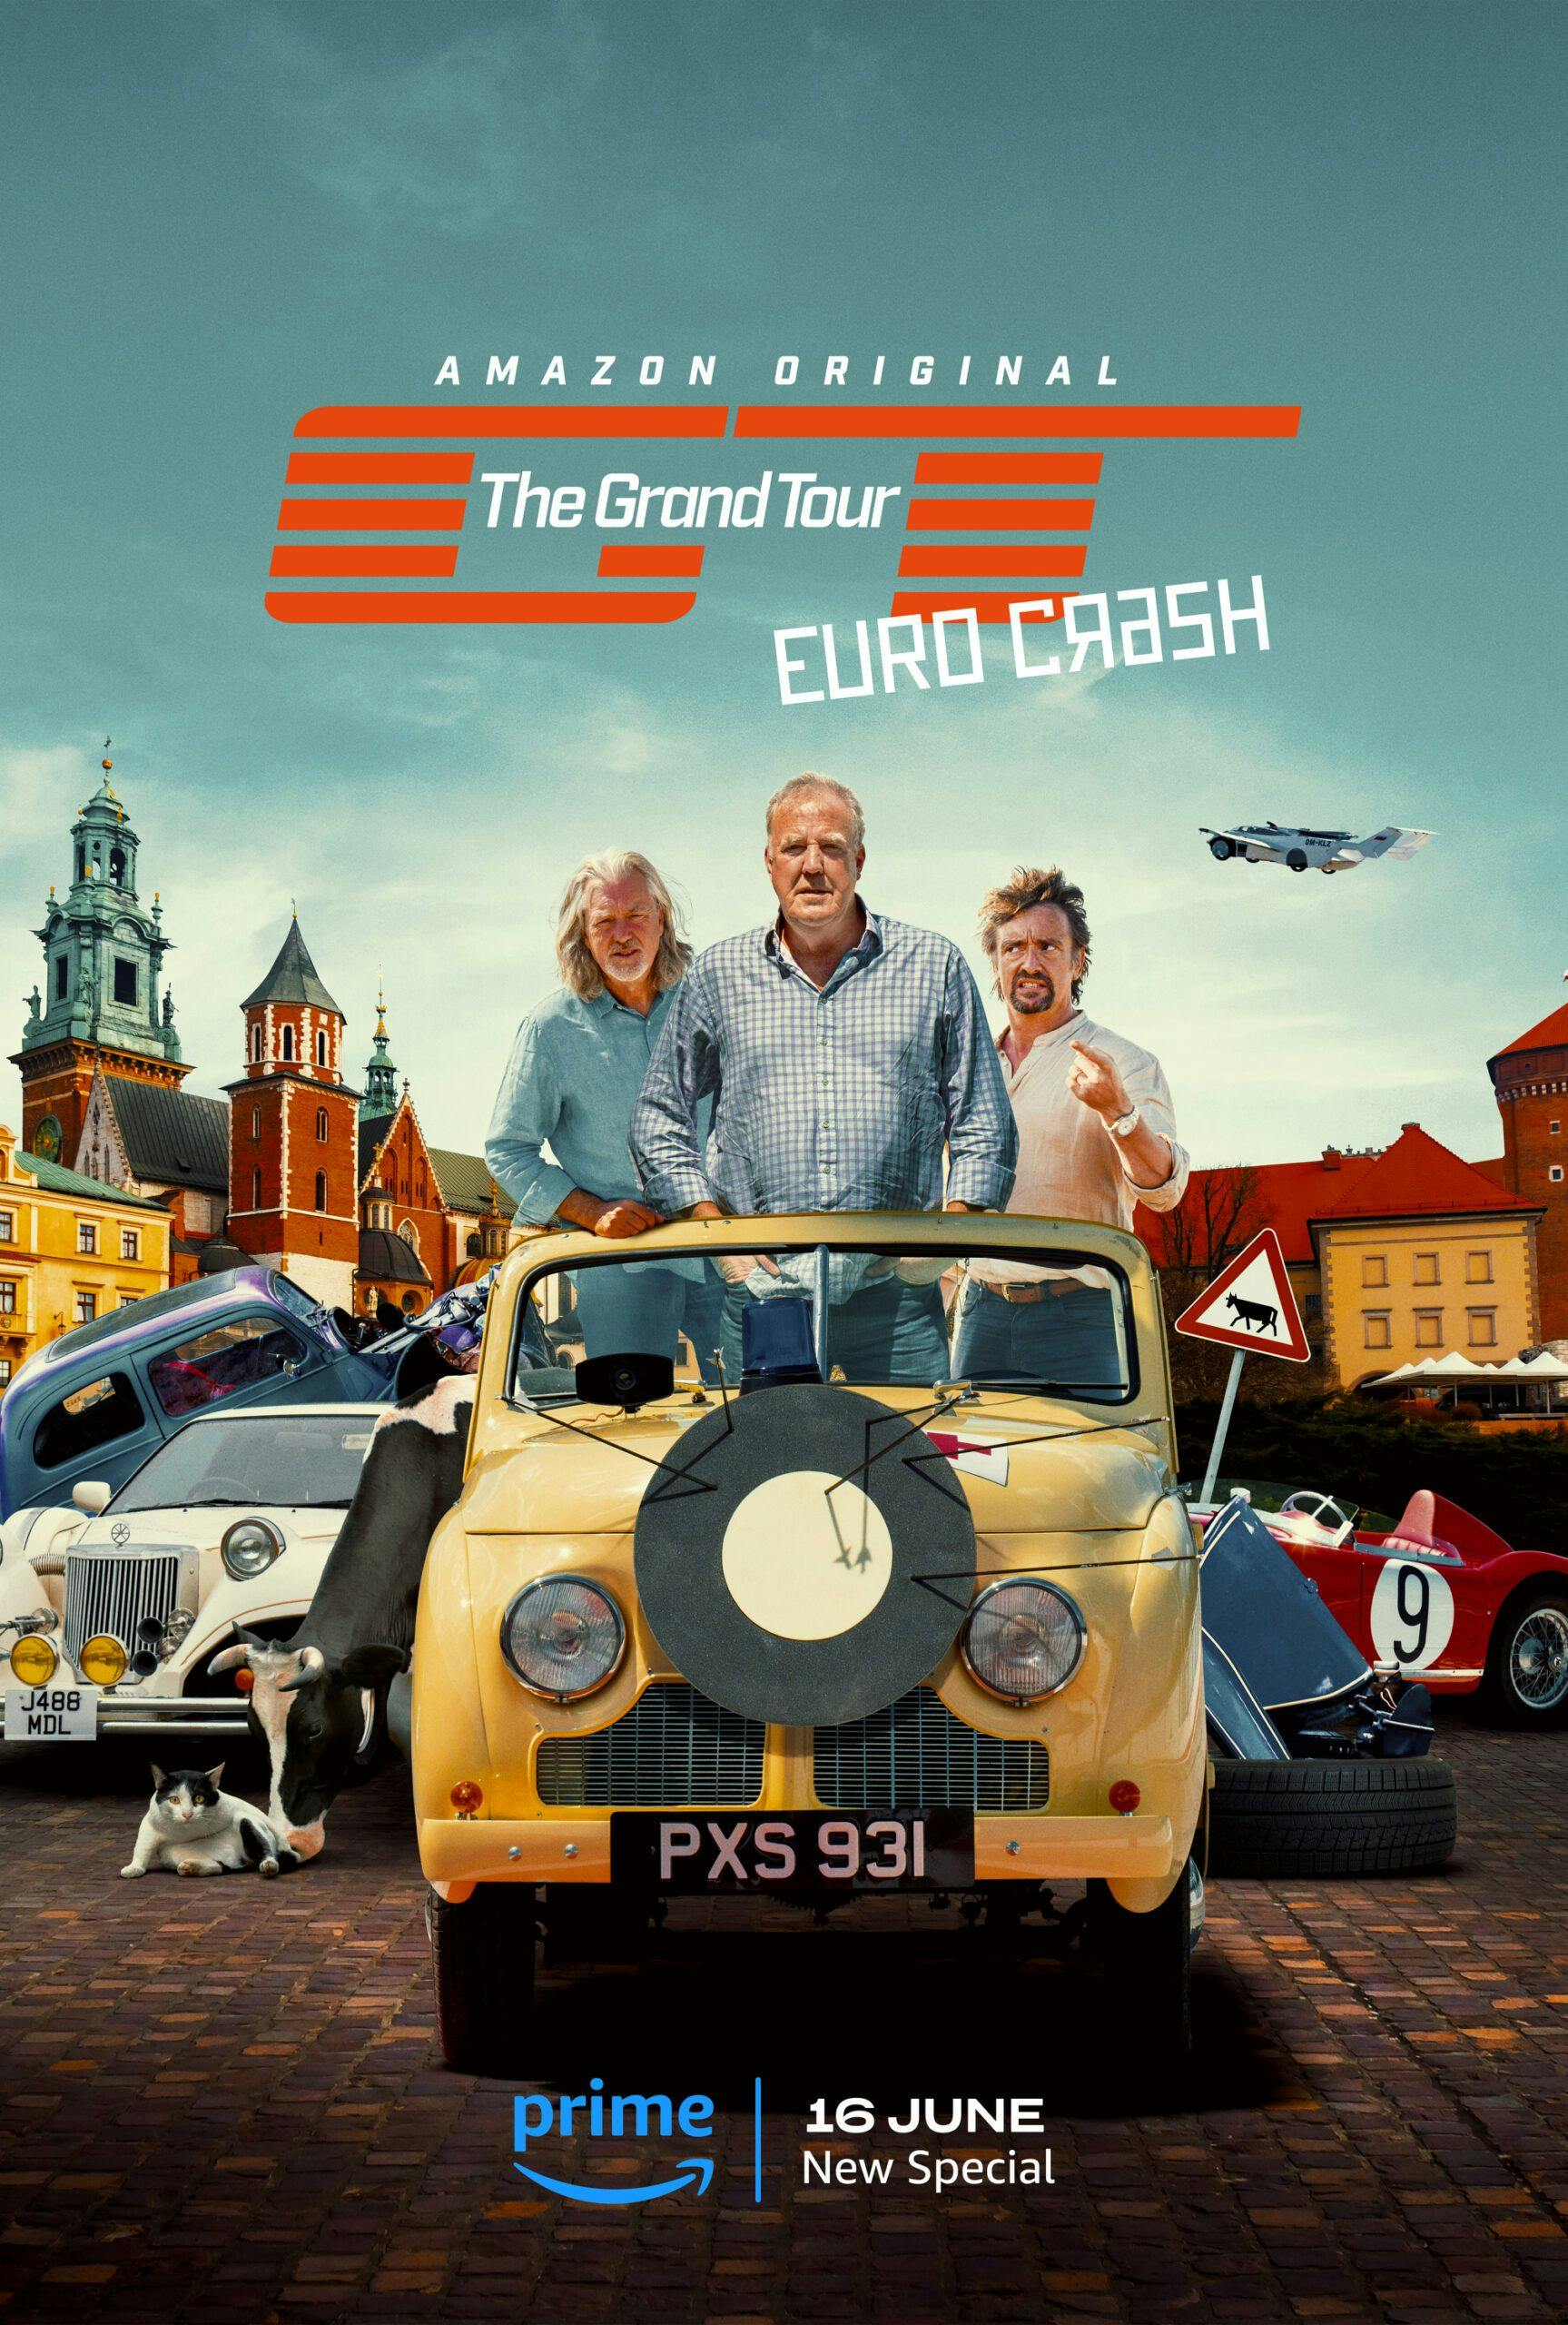 The Grand Tour er klar i weekenden med Eurocrash